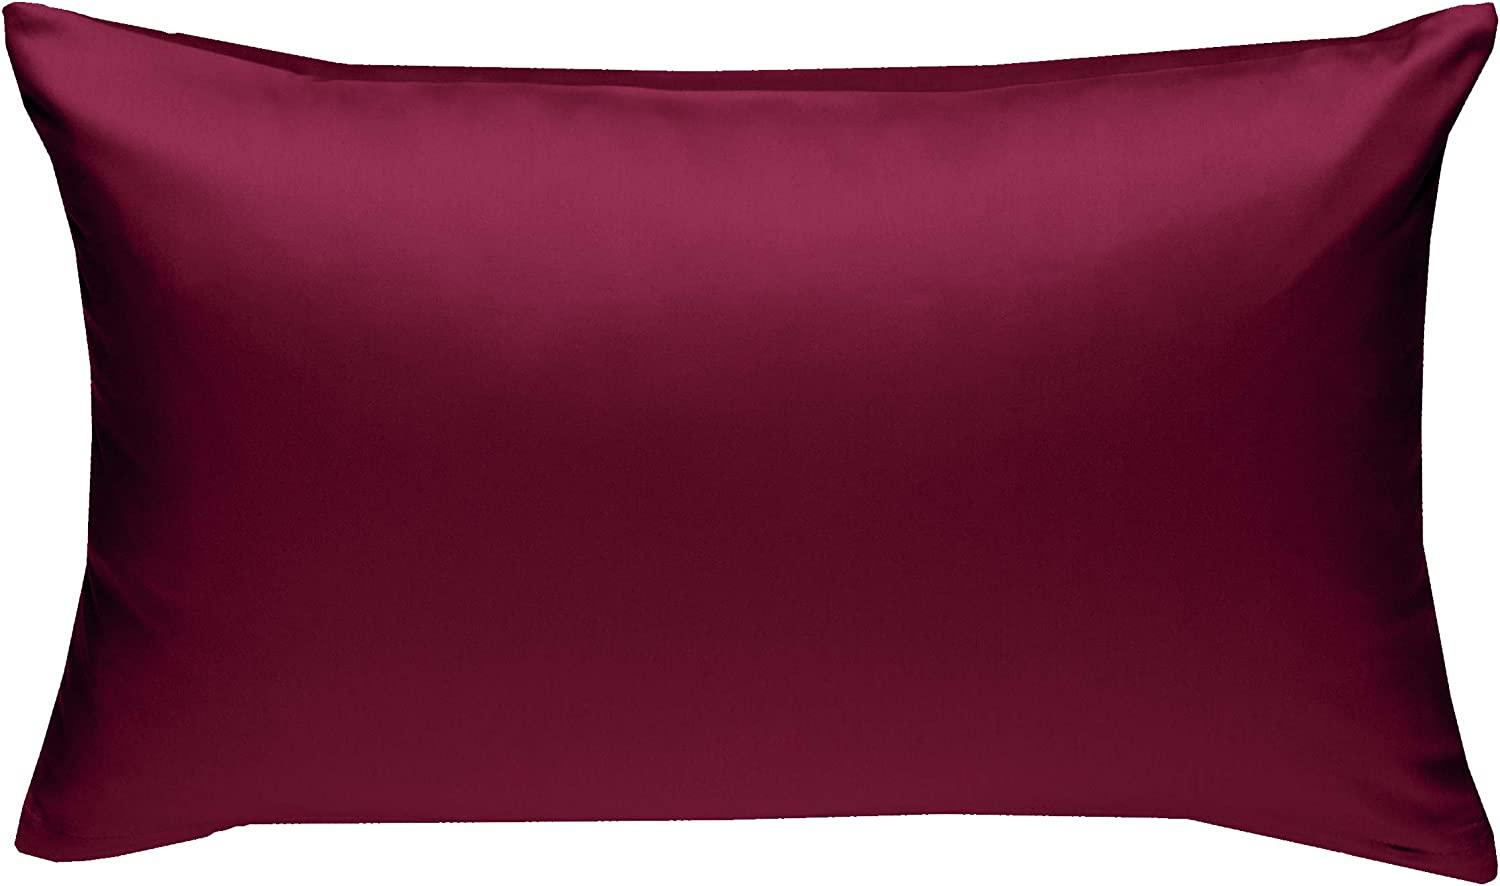 Bettwaesche-mit-Stil Mako-Satin / Baumwollsatin Bettwäsche uni / einfarbig pink Kissenbezug 60x80 cm Bild 1